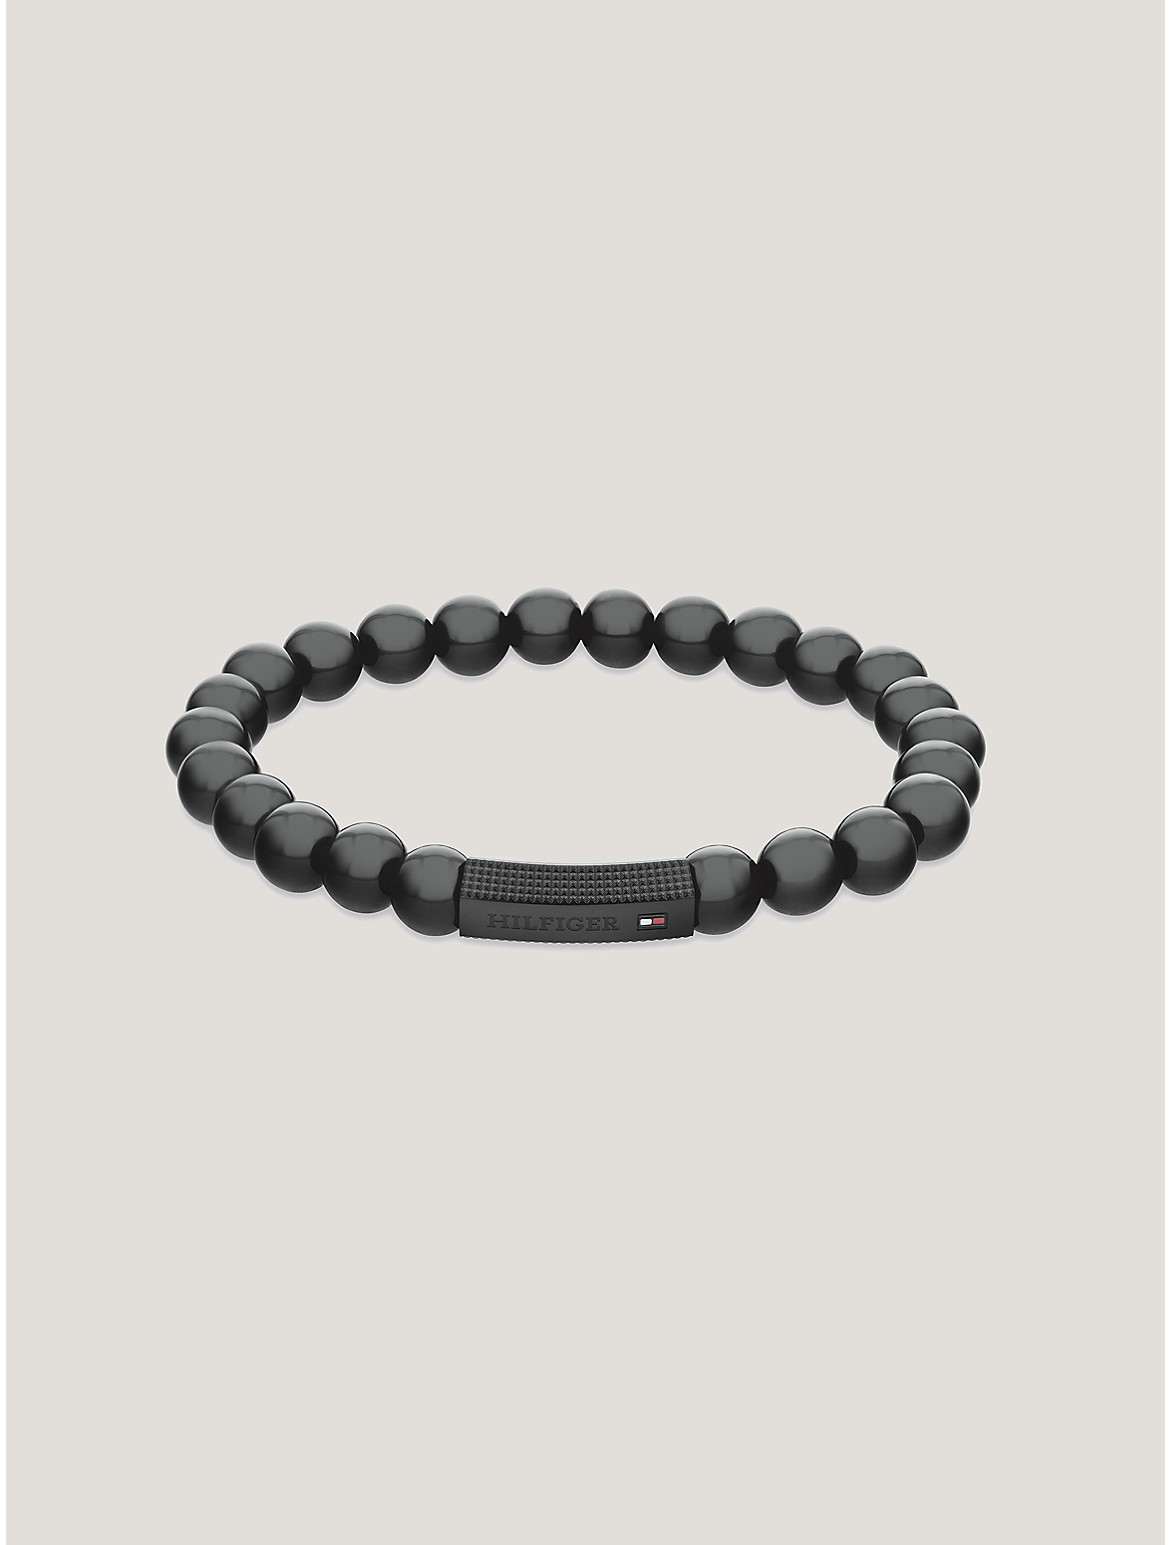 Tommy Hilfiger Men's Black Ion-Plated Beads Bracelet